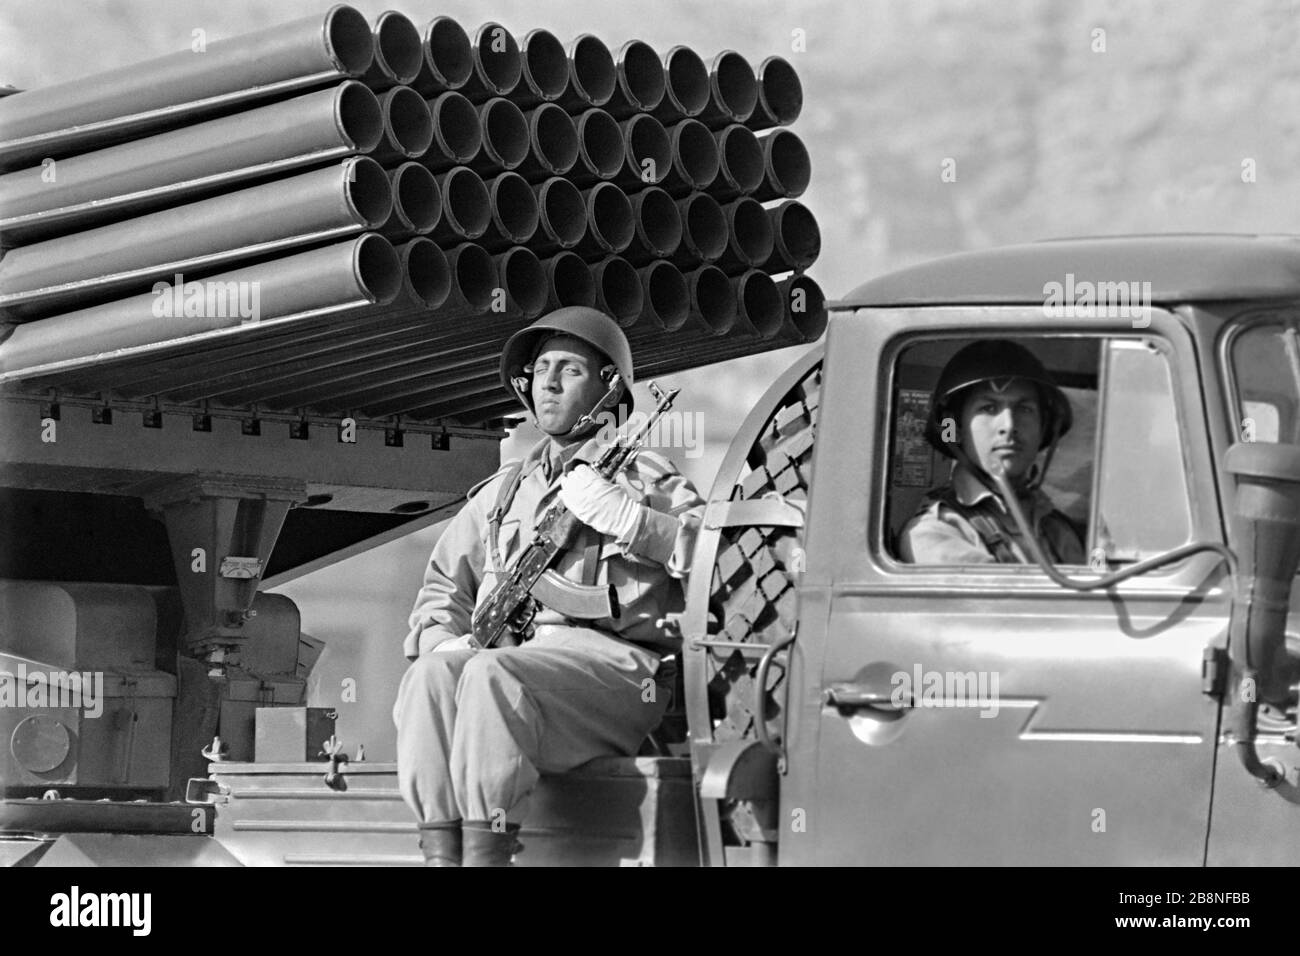 Afghanische Soldaten fahren während einer Militärparade mit einem 122-mm-Mehrfach-Raketenwerfer vom Typ BM-21 "Grad", der zum zehnten Jahrestag der kommunistischen Revolution am 26. April 1988 in Kabul, Afghanistan, eingesetzt wurde. Das kommunistische Regime übernahm die Macht in einer von der Sowjetunion unterstützten Revolte, die als Saurrevolution bekannt ist. Stockfoto